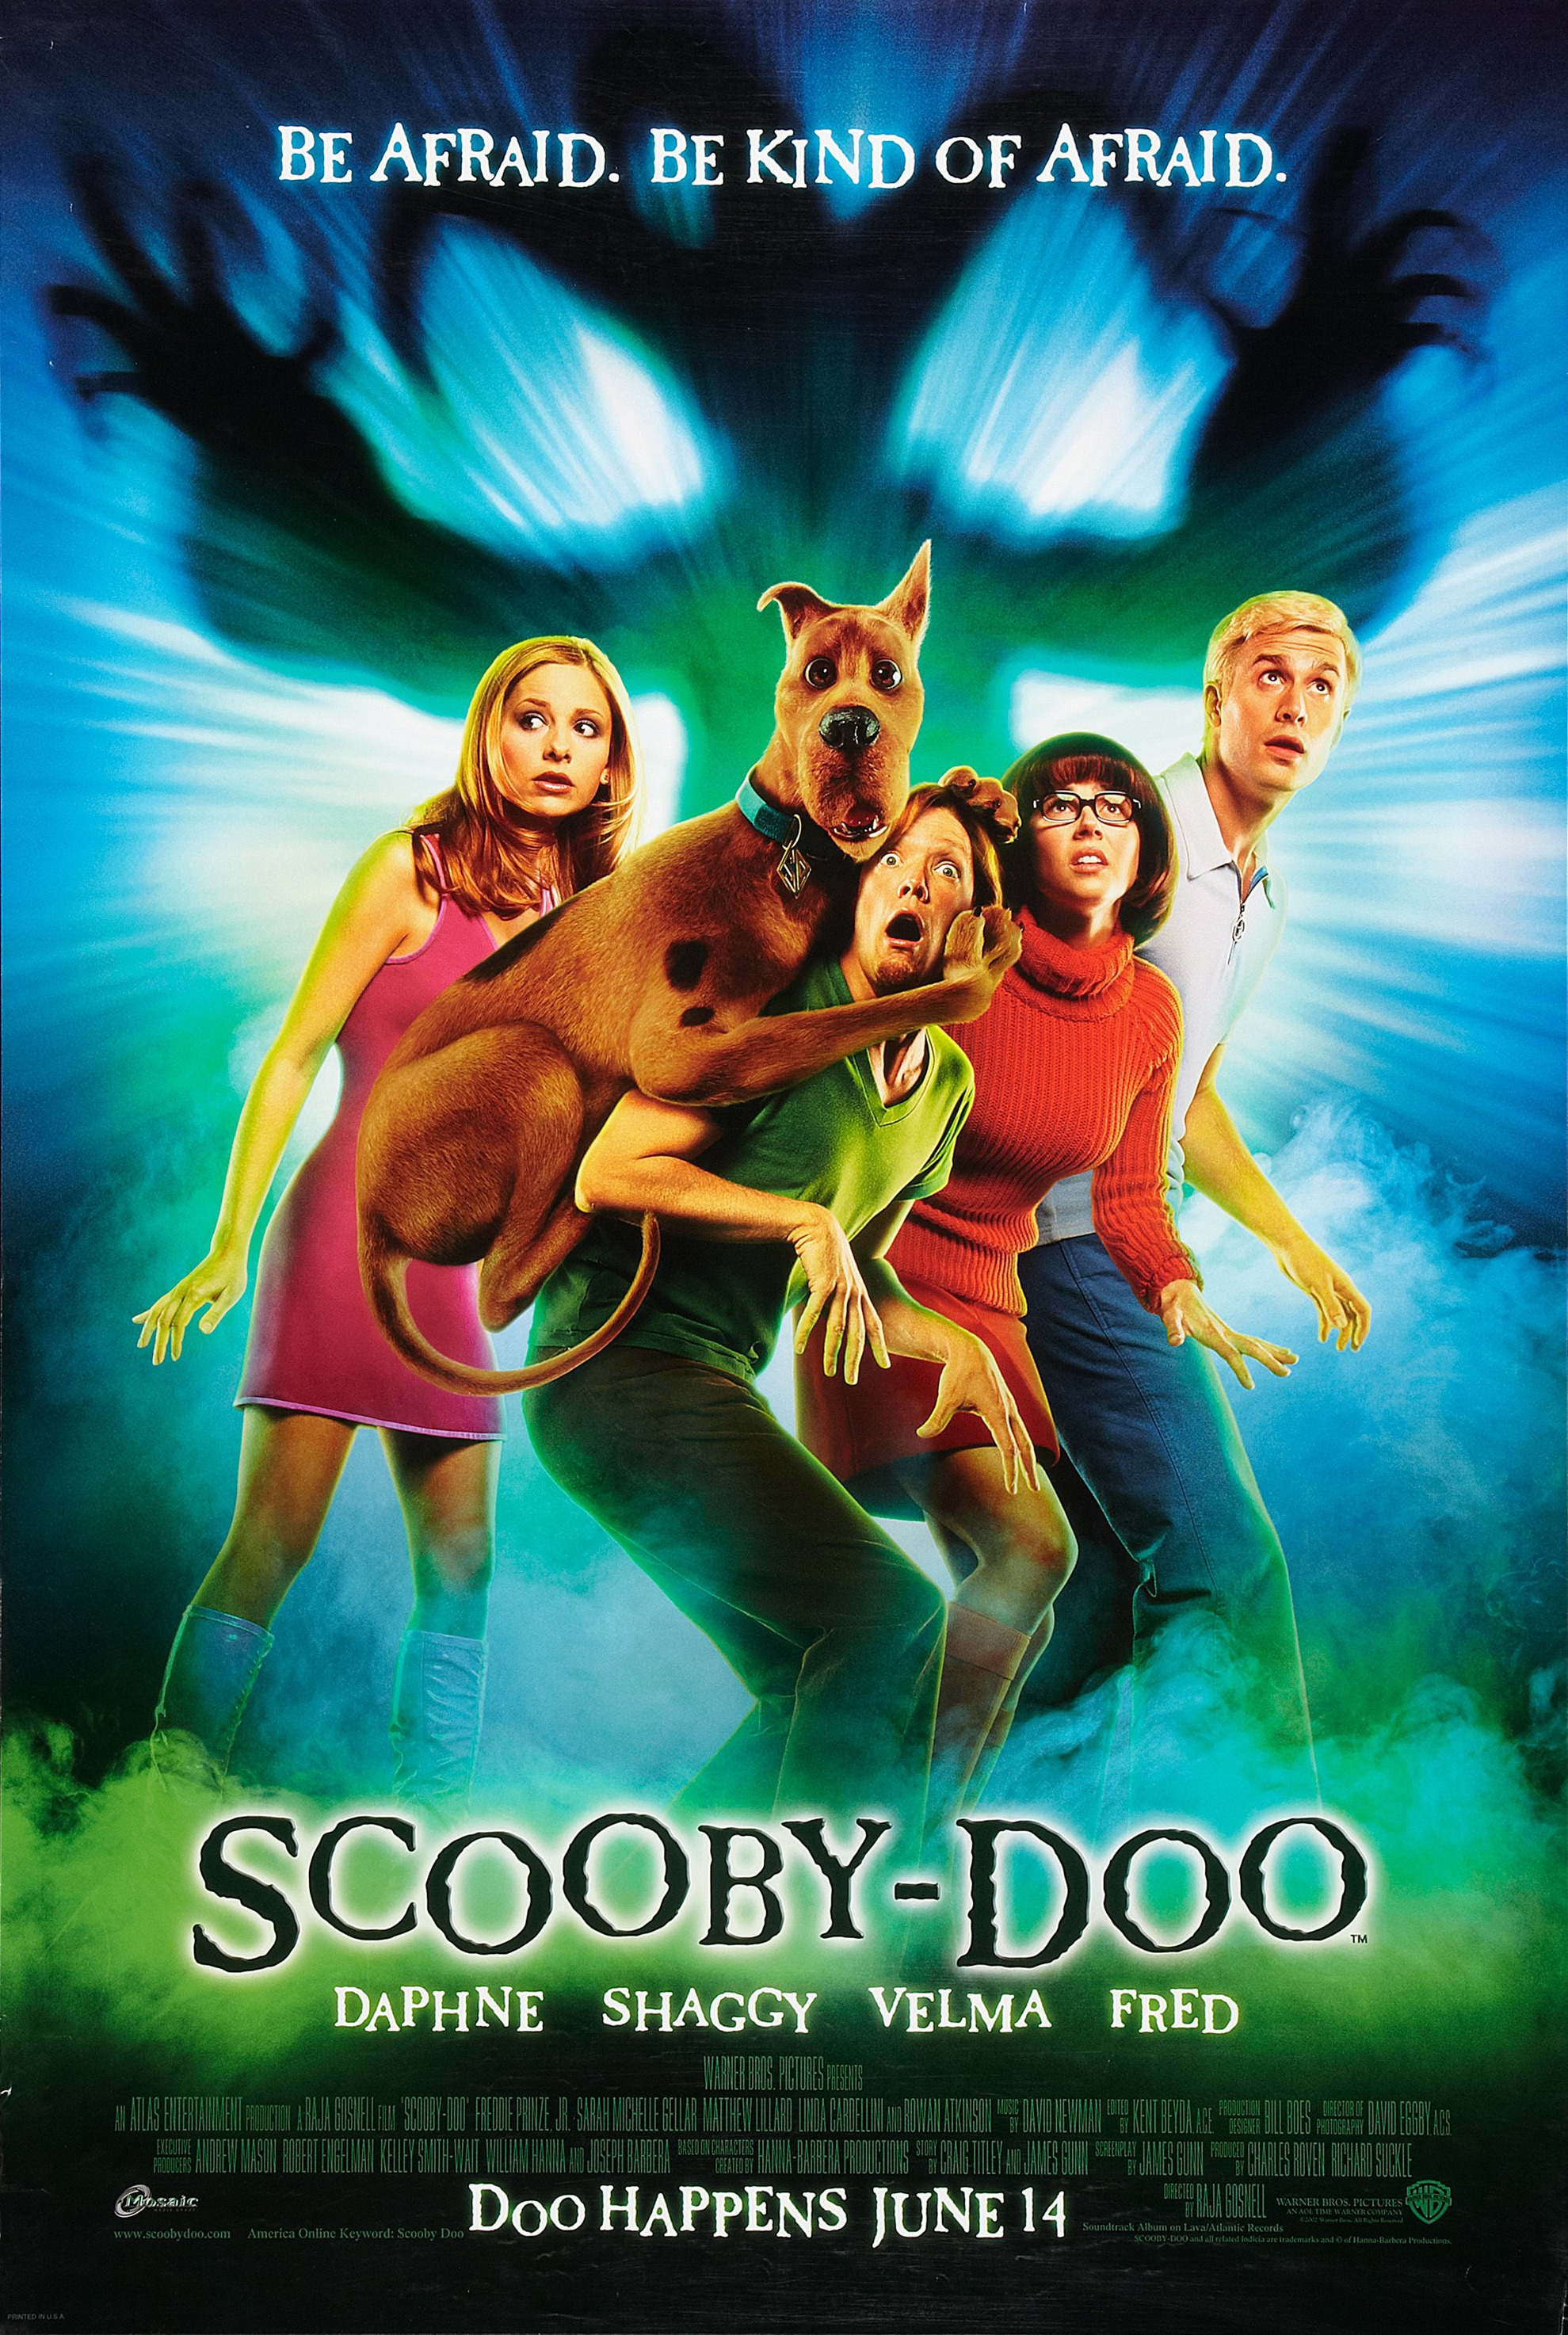 Scooby-Doo (film) Warner Bros